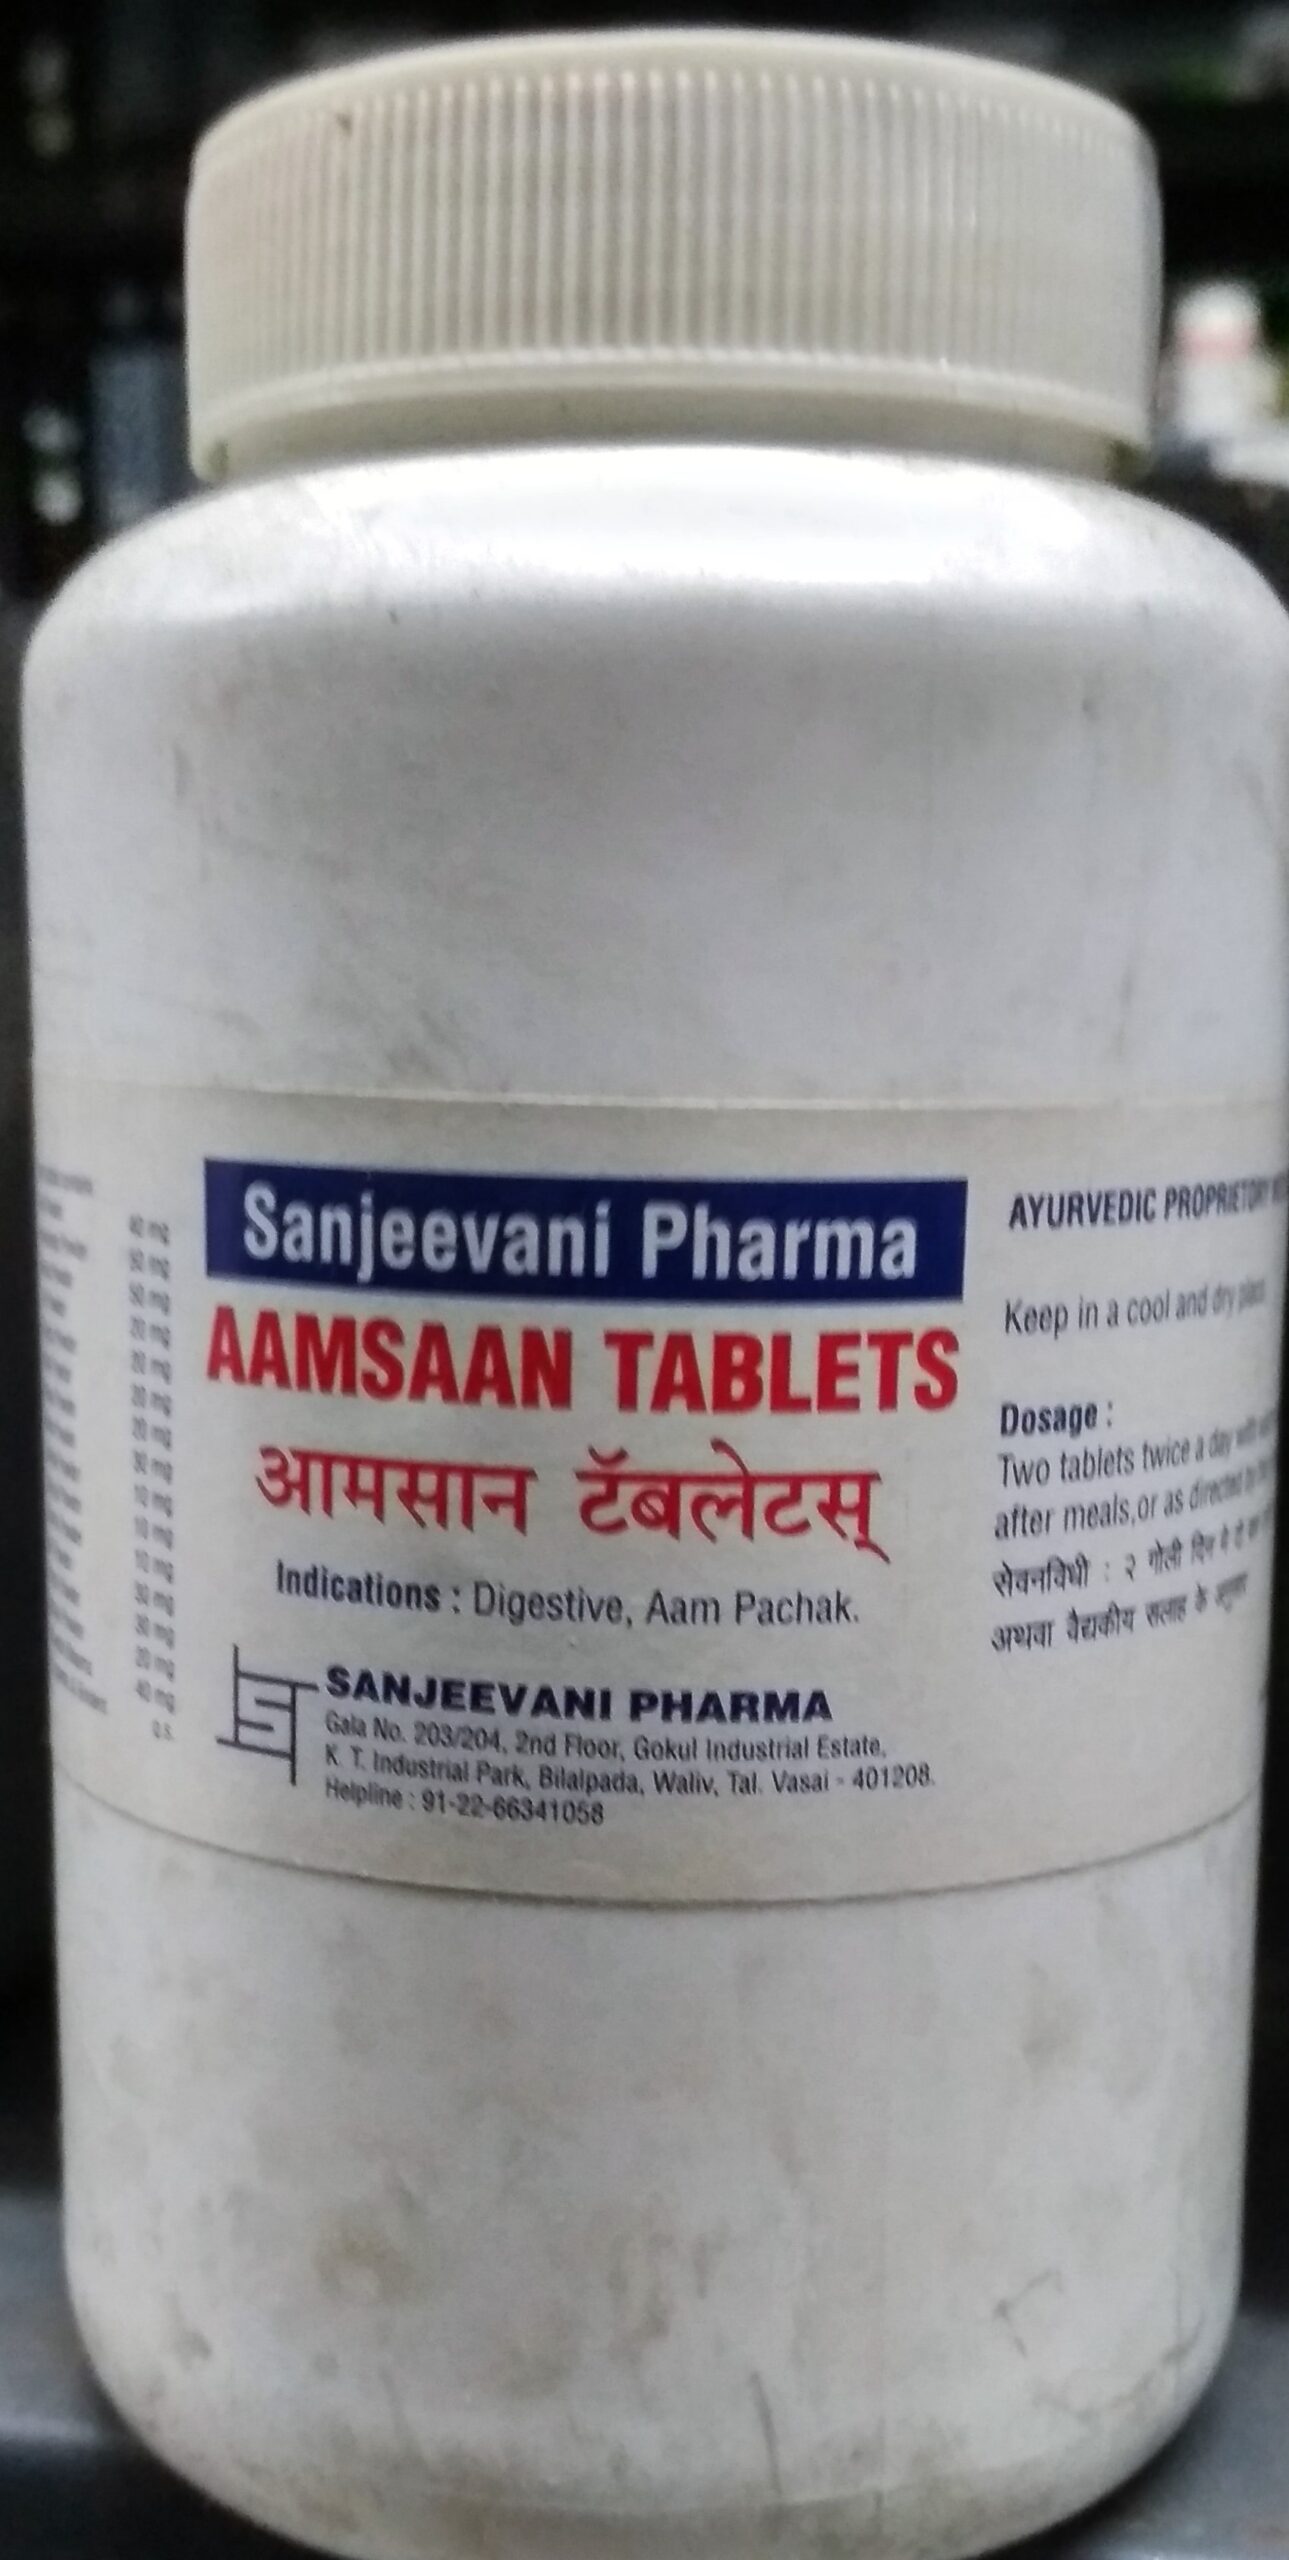 aamsaan tablet 500 tab upto 20% off sanjeevani pharma mumbai